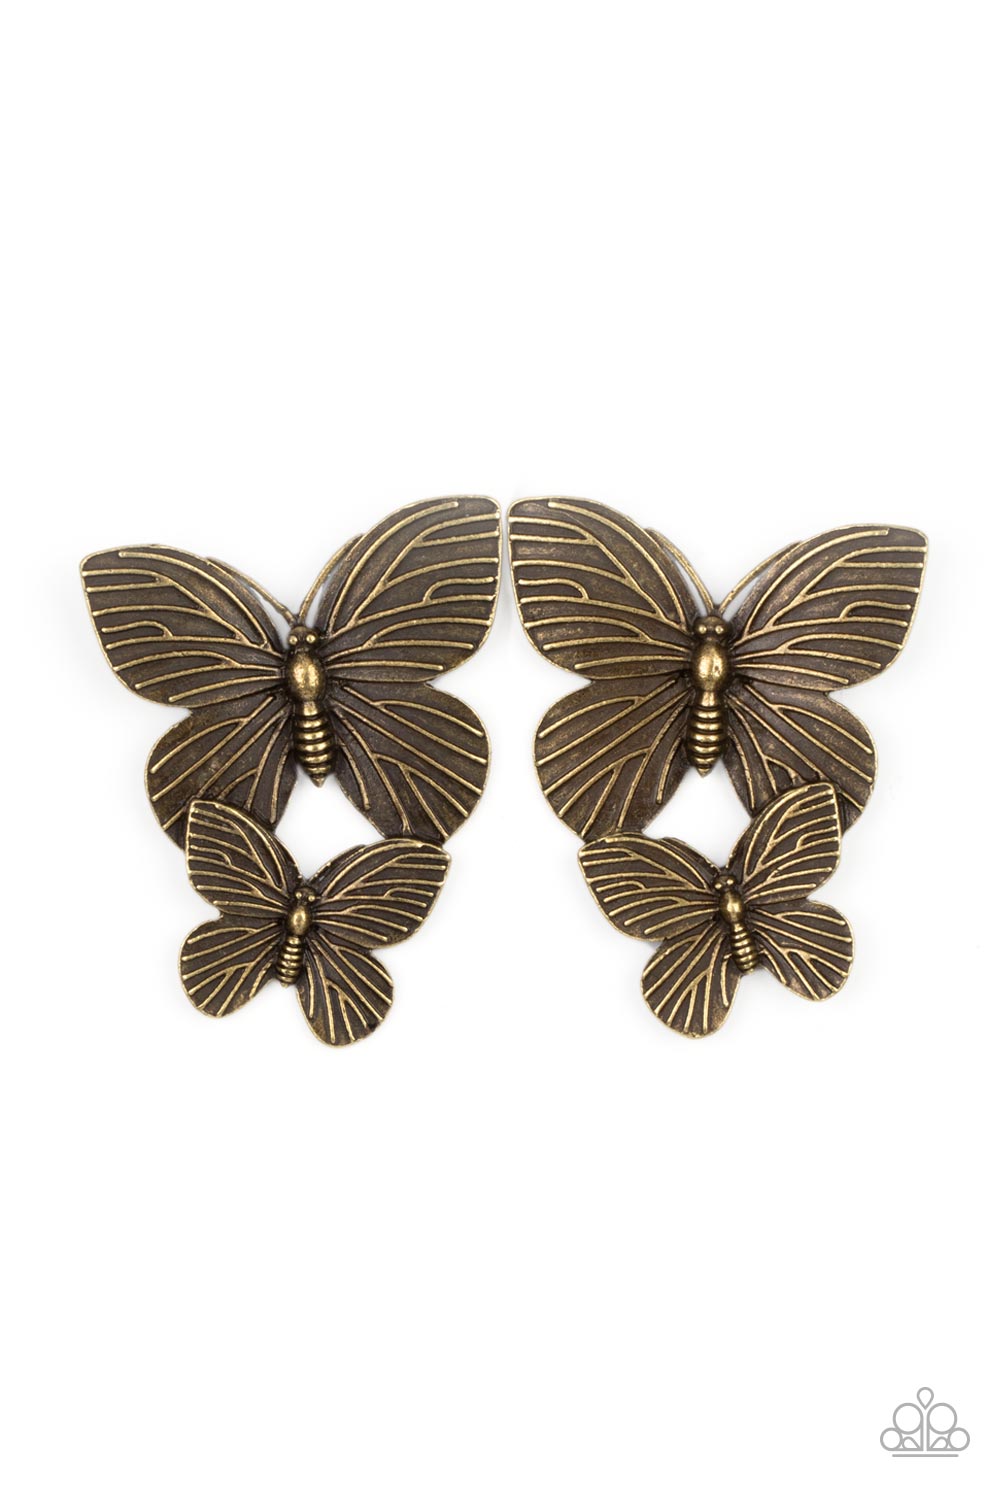 Paparazzi - Blushing Butterflies - Brass Earrings - Alies Bling Bar